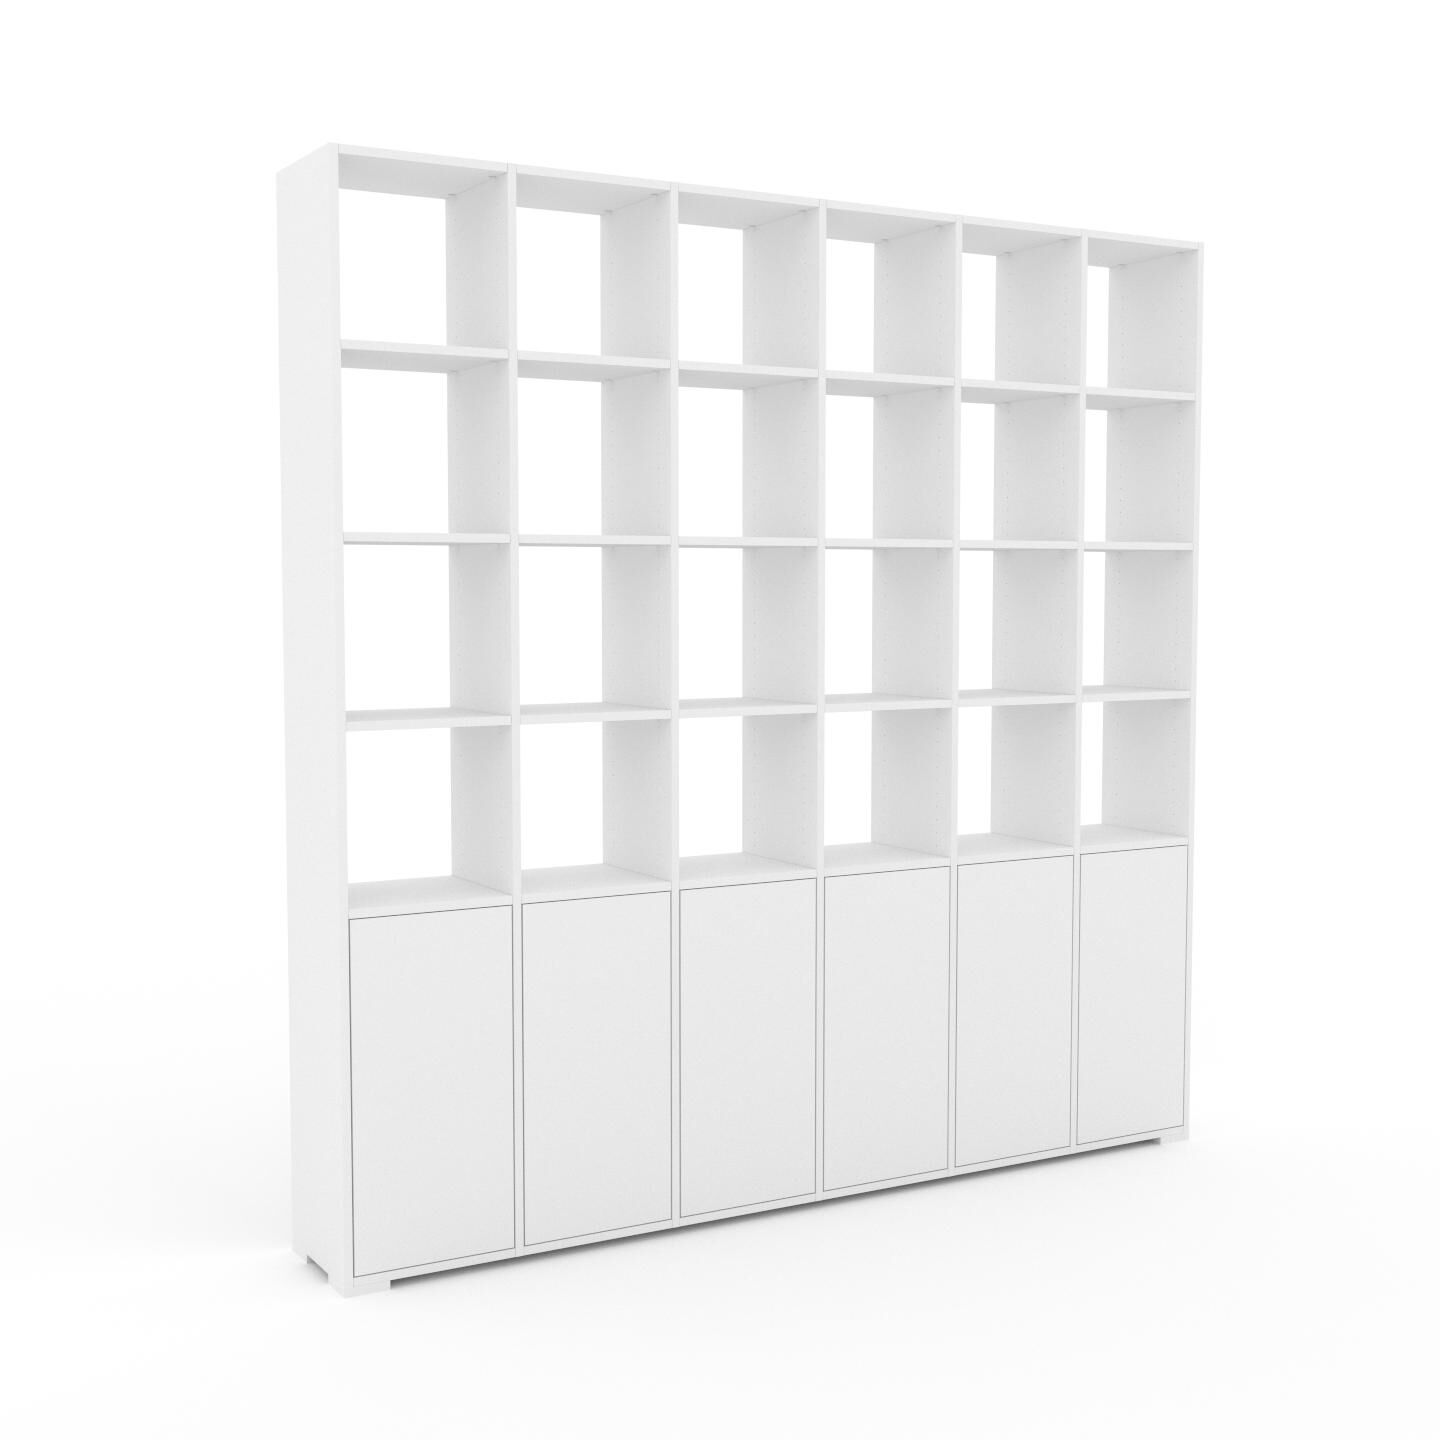 MYCS Bücherregal Weiß - Modernes Regal für Bücher: Türen in Weiß - 233 x 235 x 35 cm, Individuell konfigurierbar